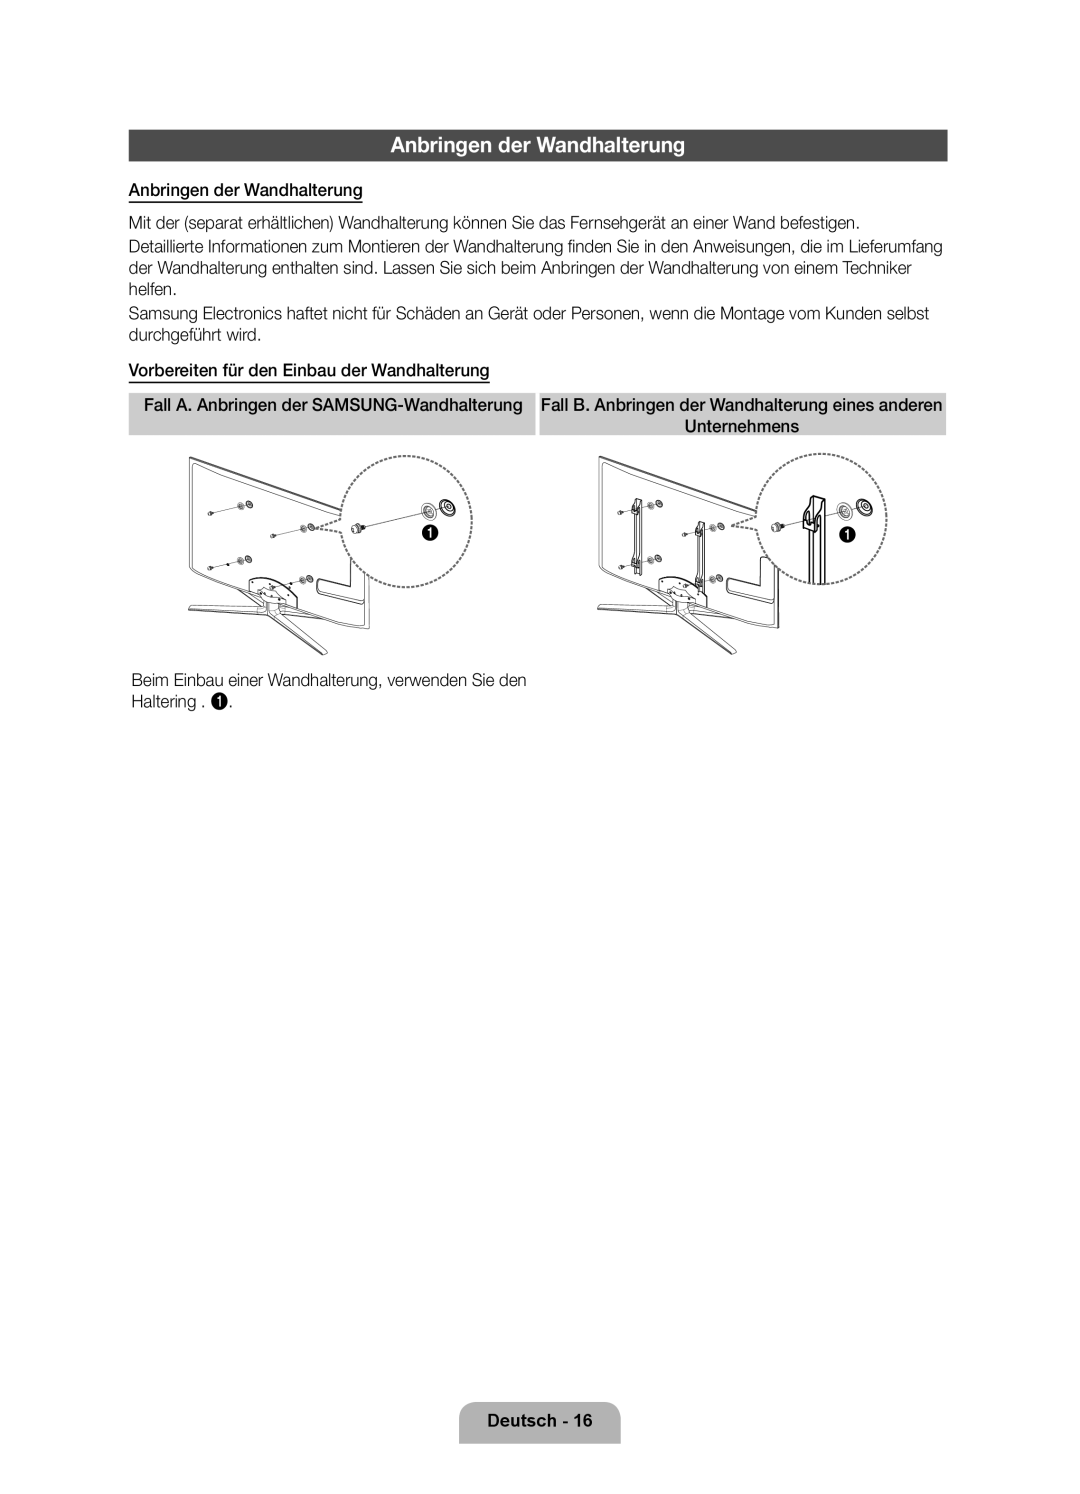 Samsung UE46D7000LSXZF, UE40D7000LSXZF, UE55D7000LSXZF manual Anbringen der Wandhalterung, Deutsch 